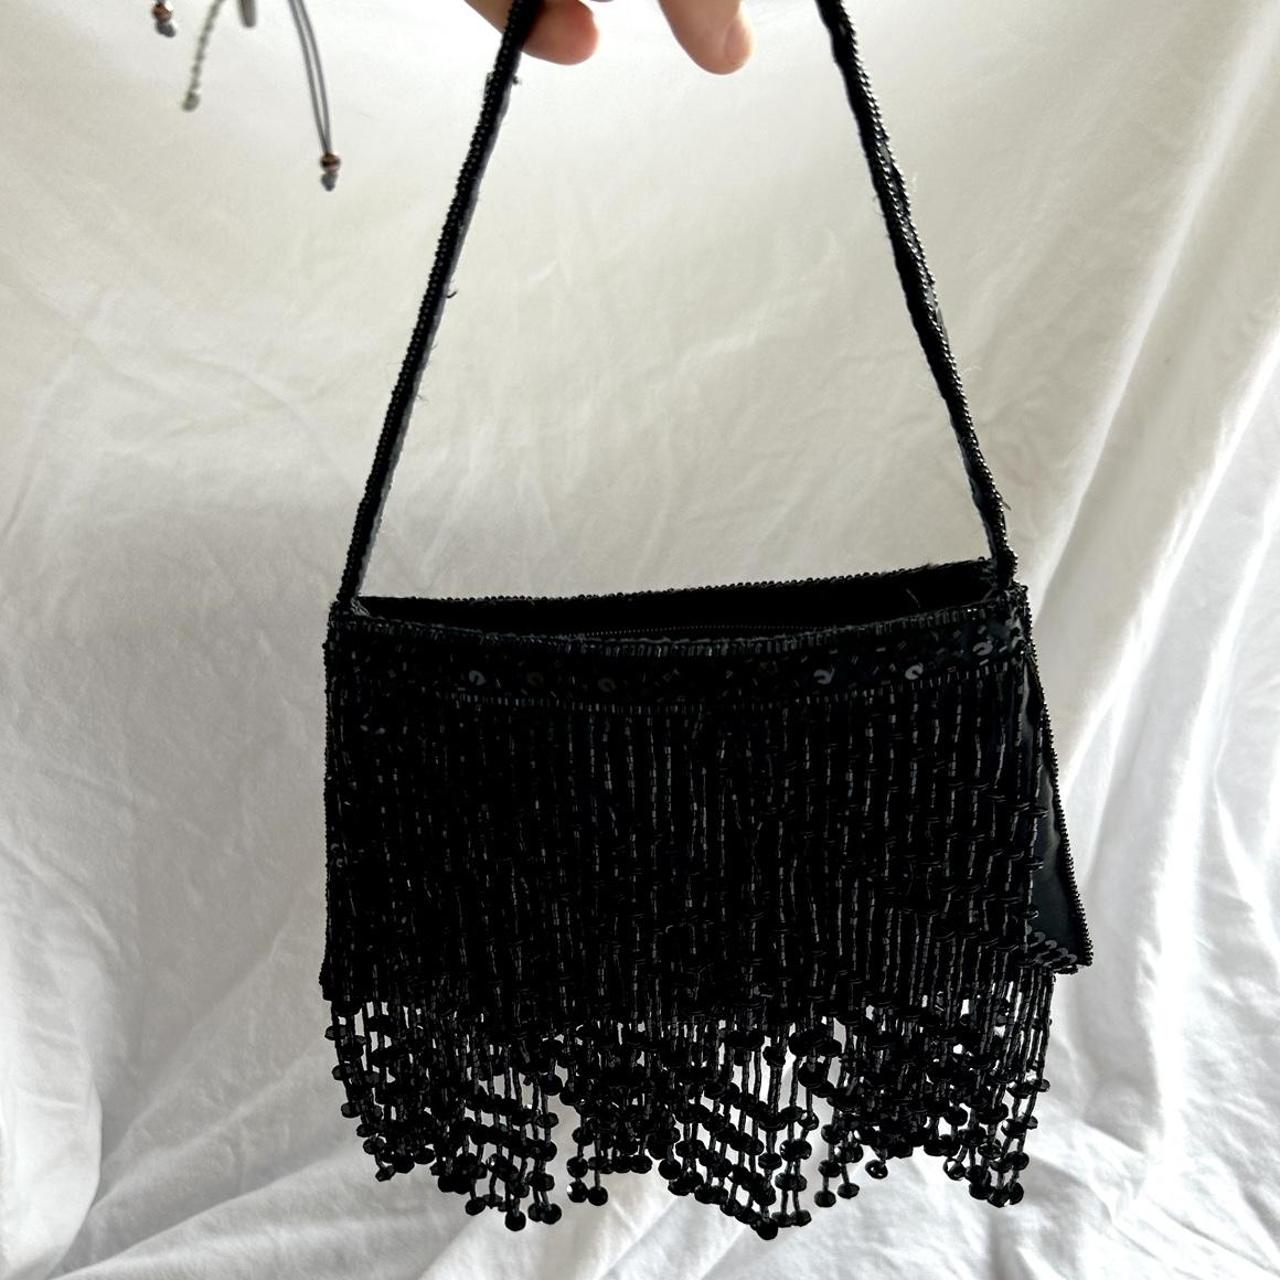 La Regale Women's Shoulder Bags - Black